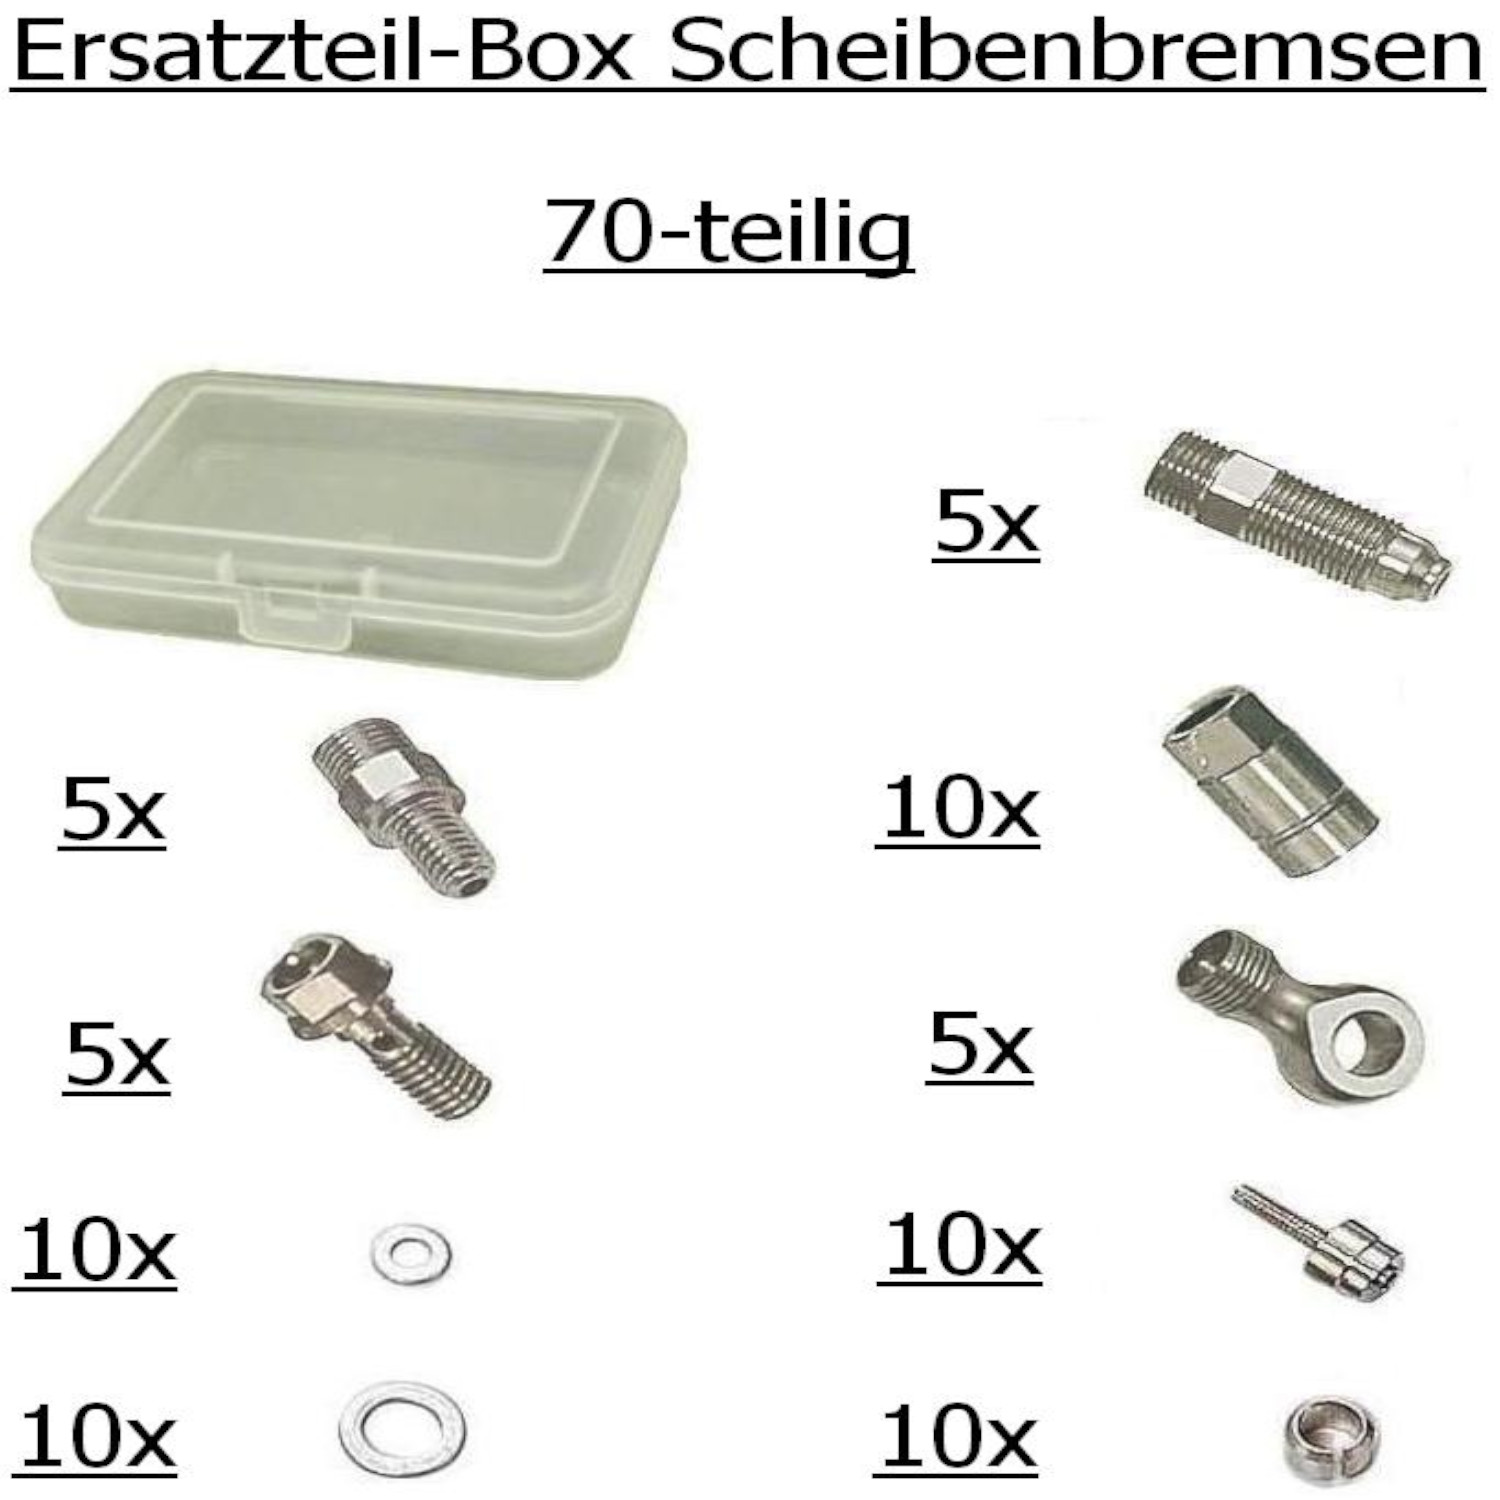 QUAXAR ET-Box FFX 8000 Scheibenbremsen 70-teilig, in Kunststoffbox